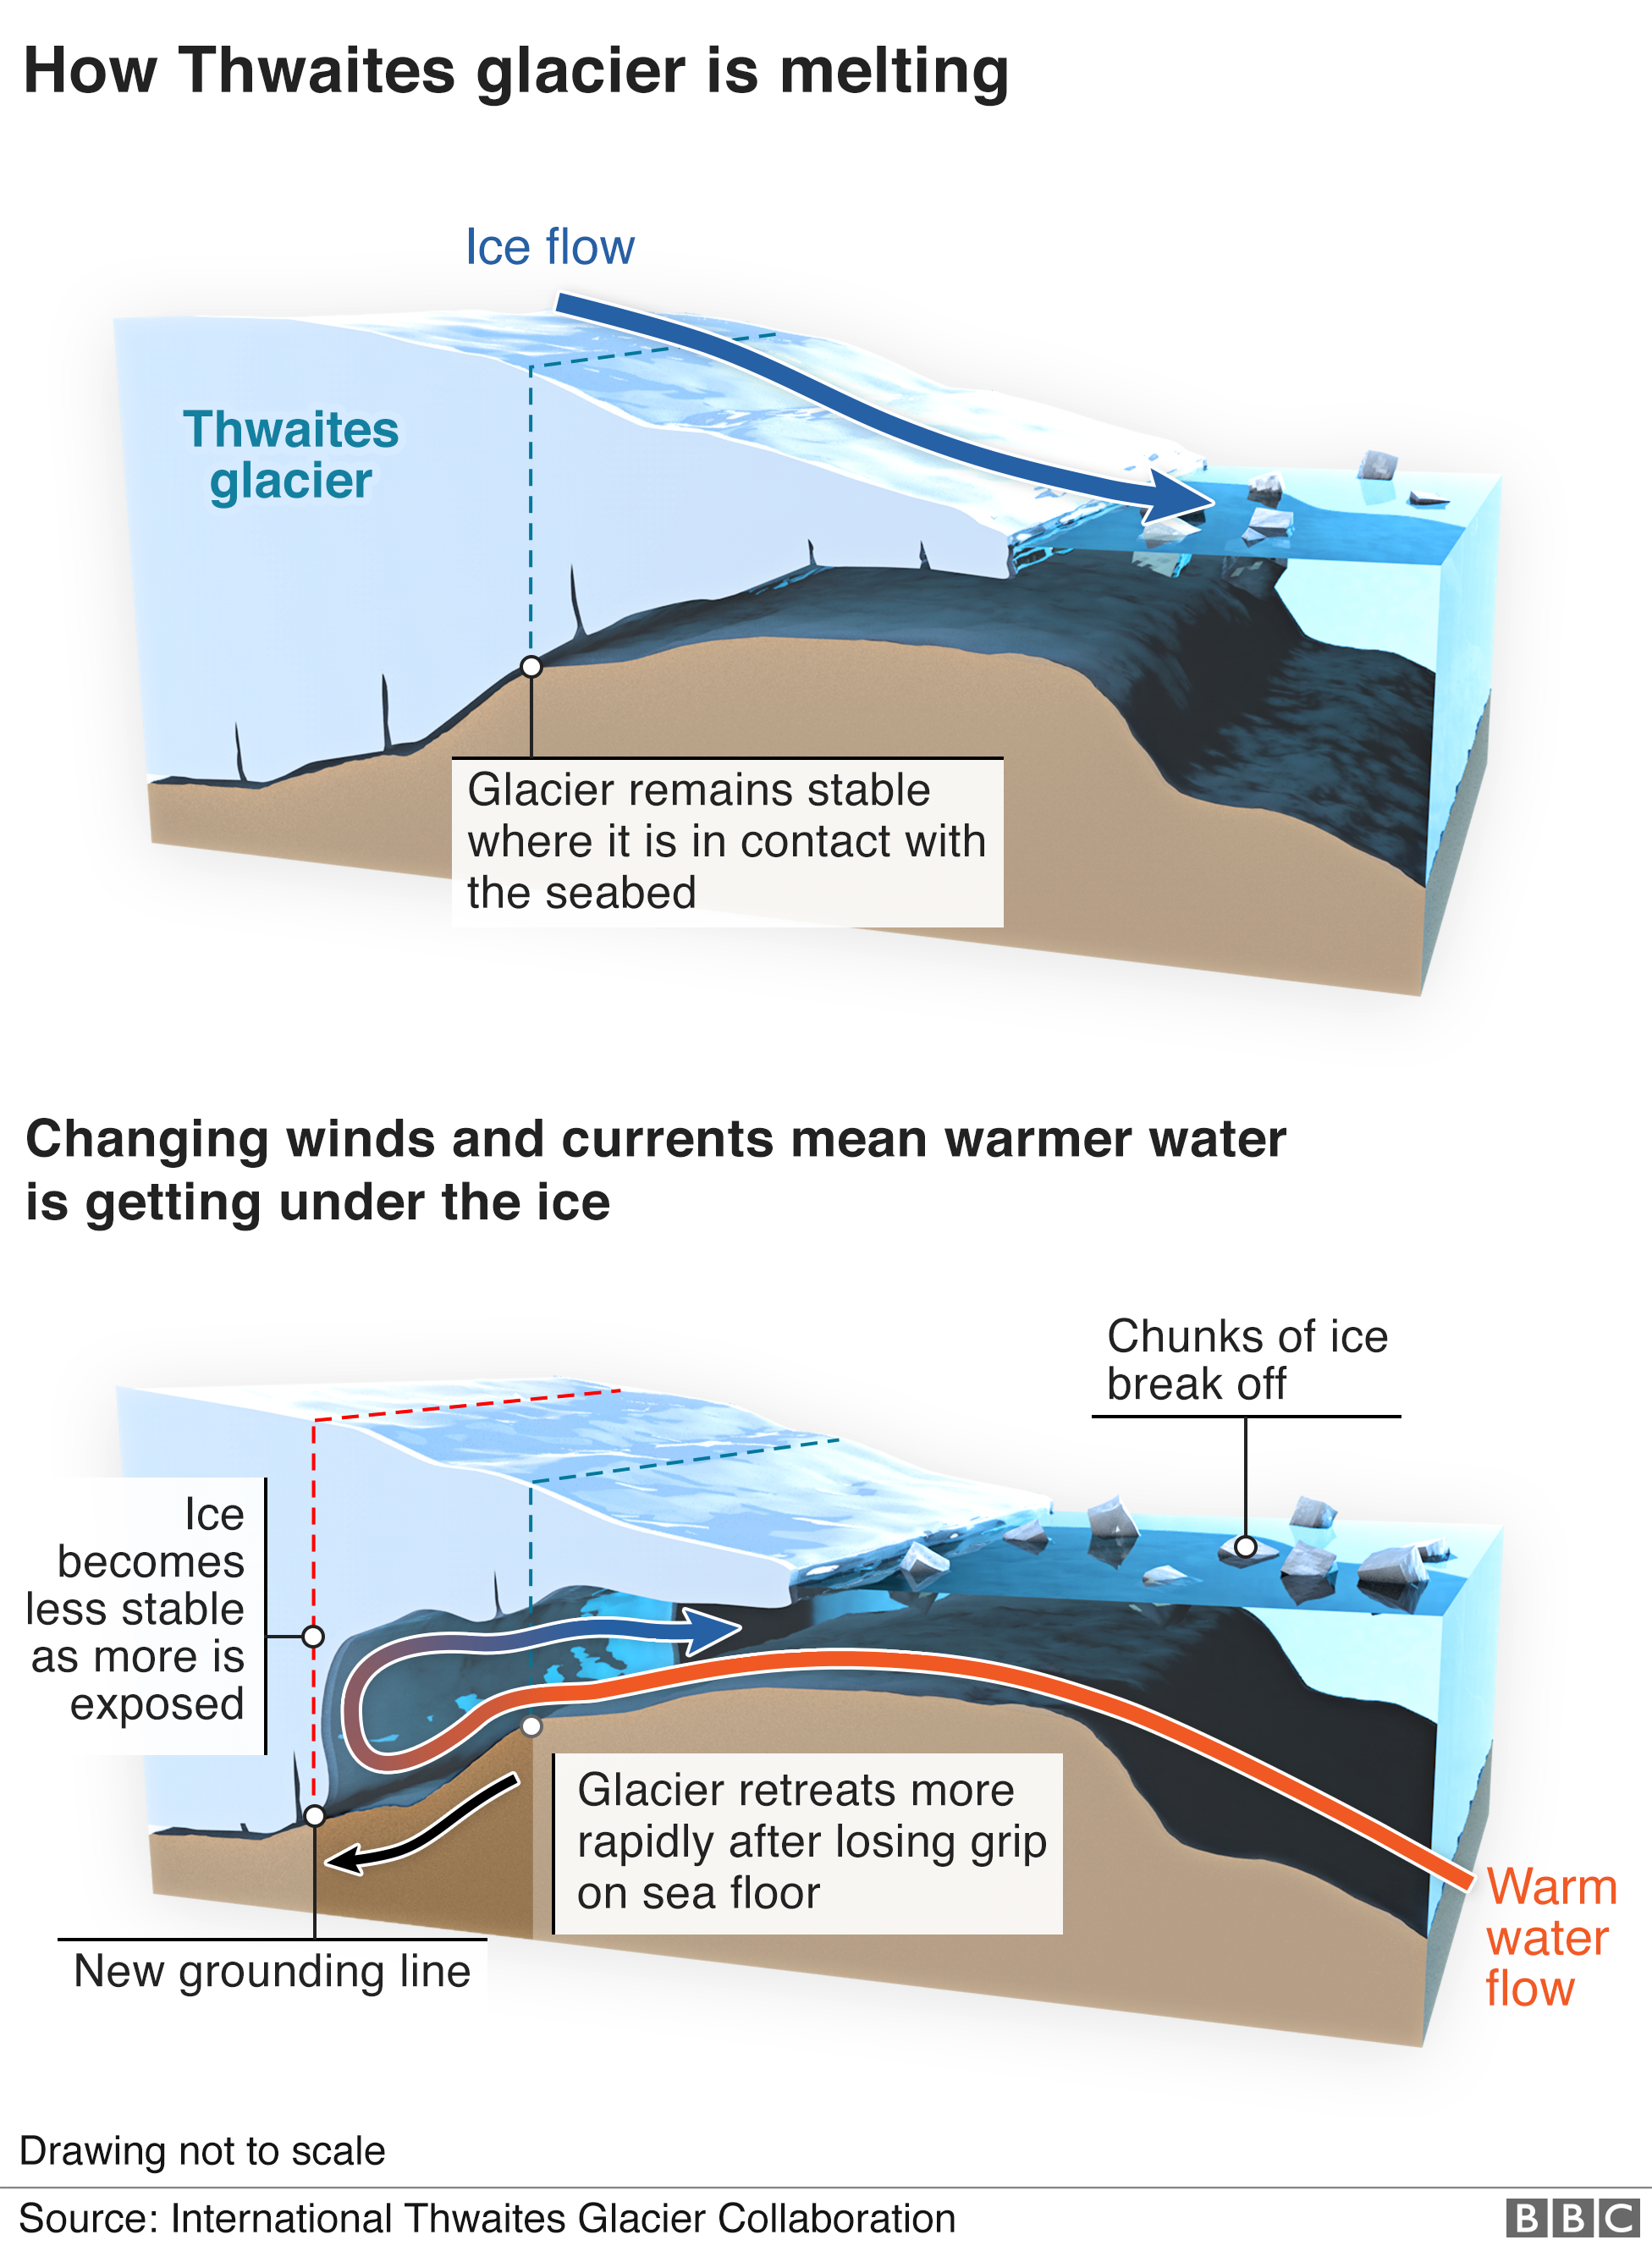 Трехмерная инфографика, объясняющая, как более теплая вода попадает под лед и ускоряет процесс таяния